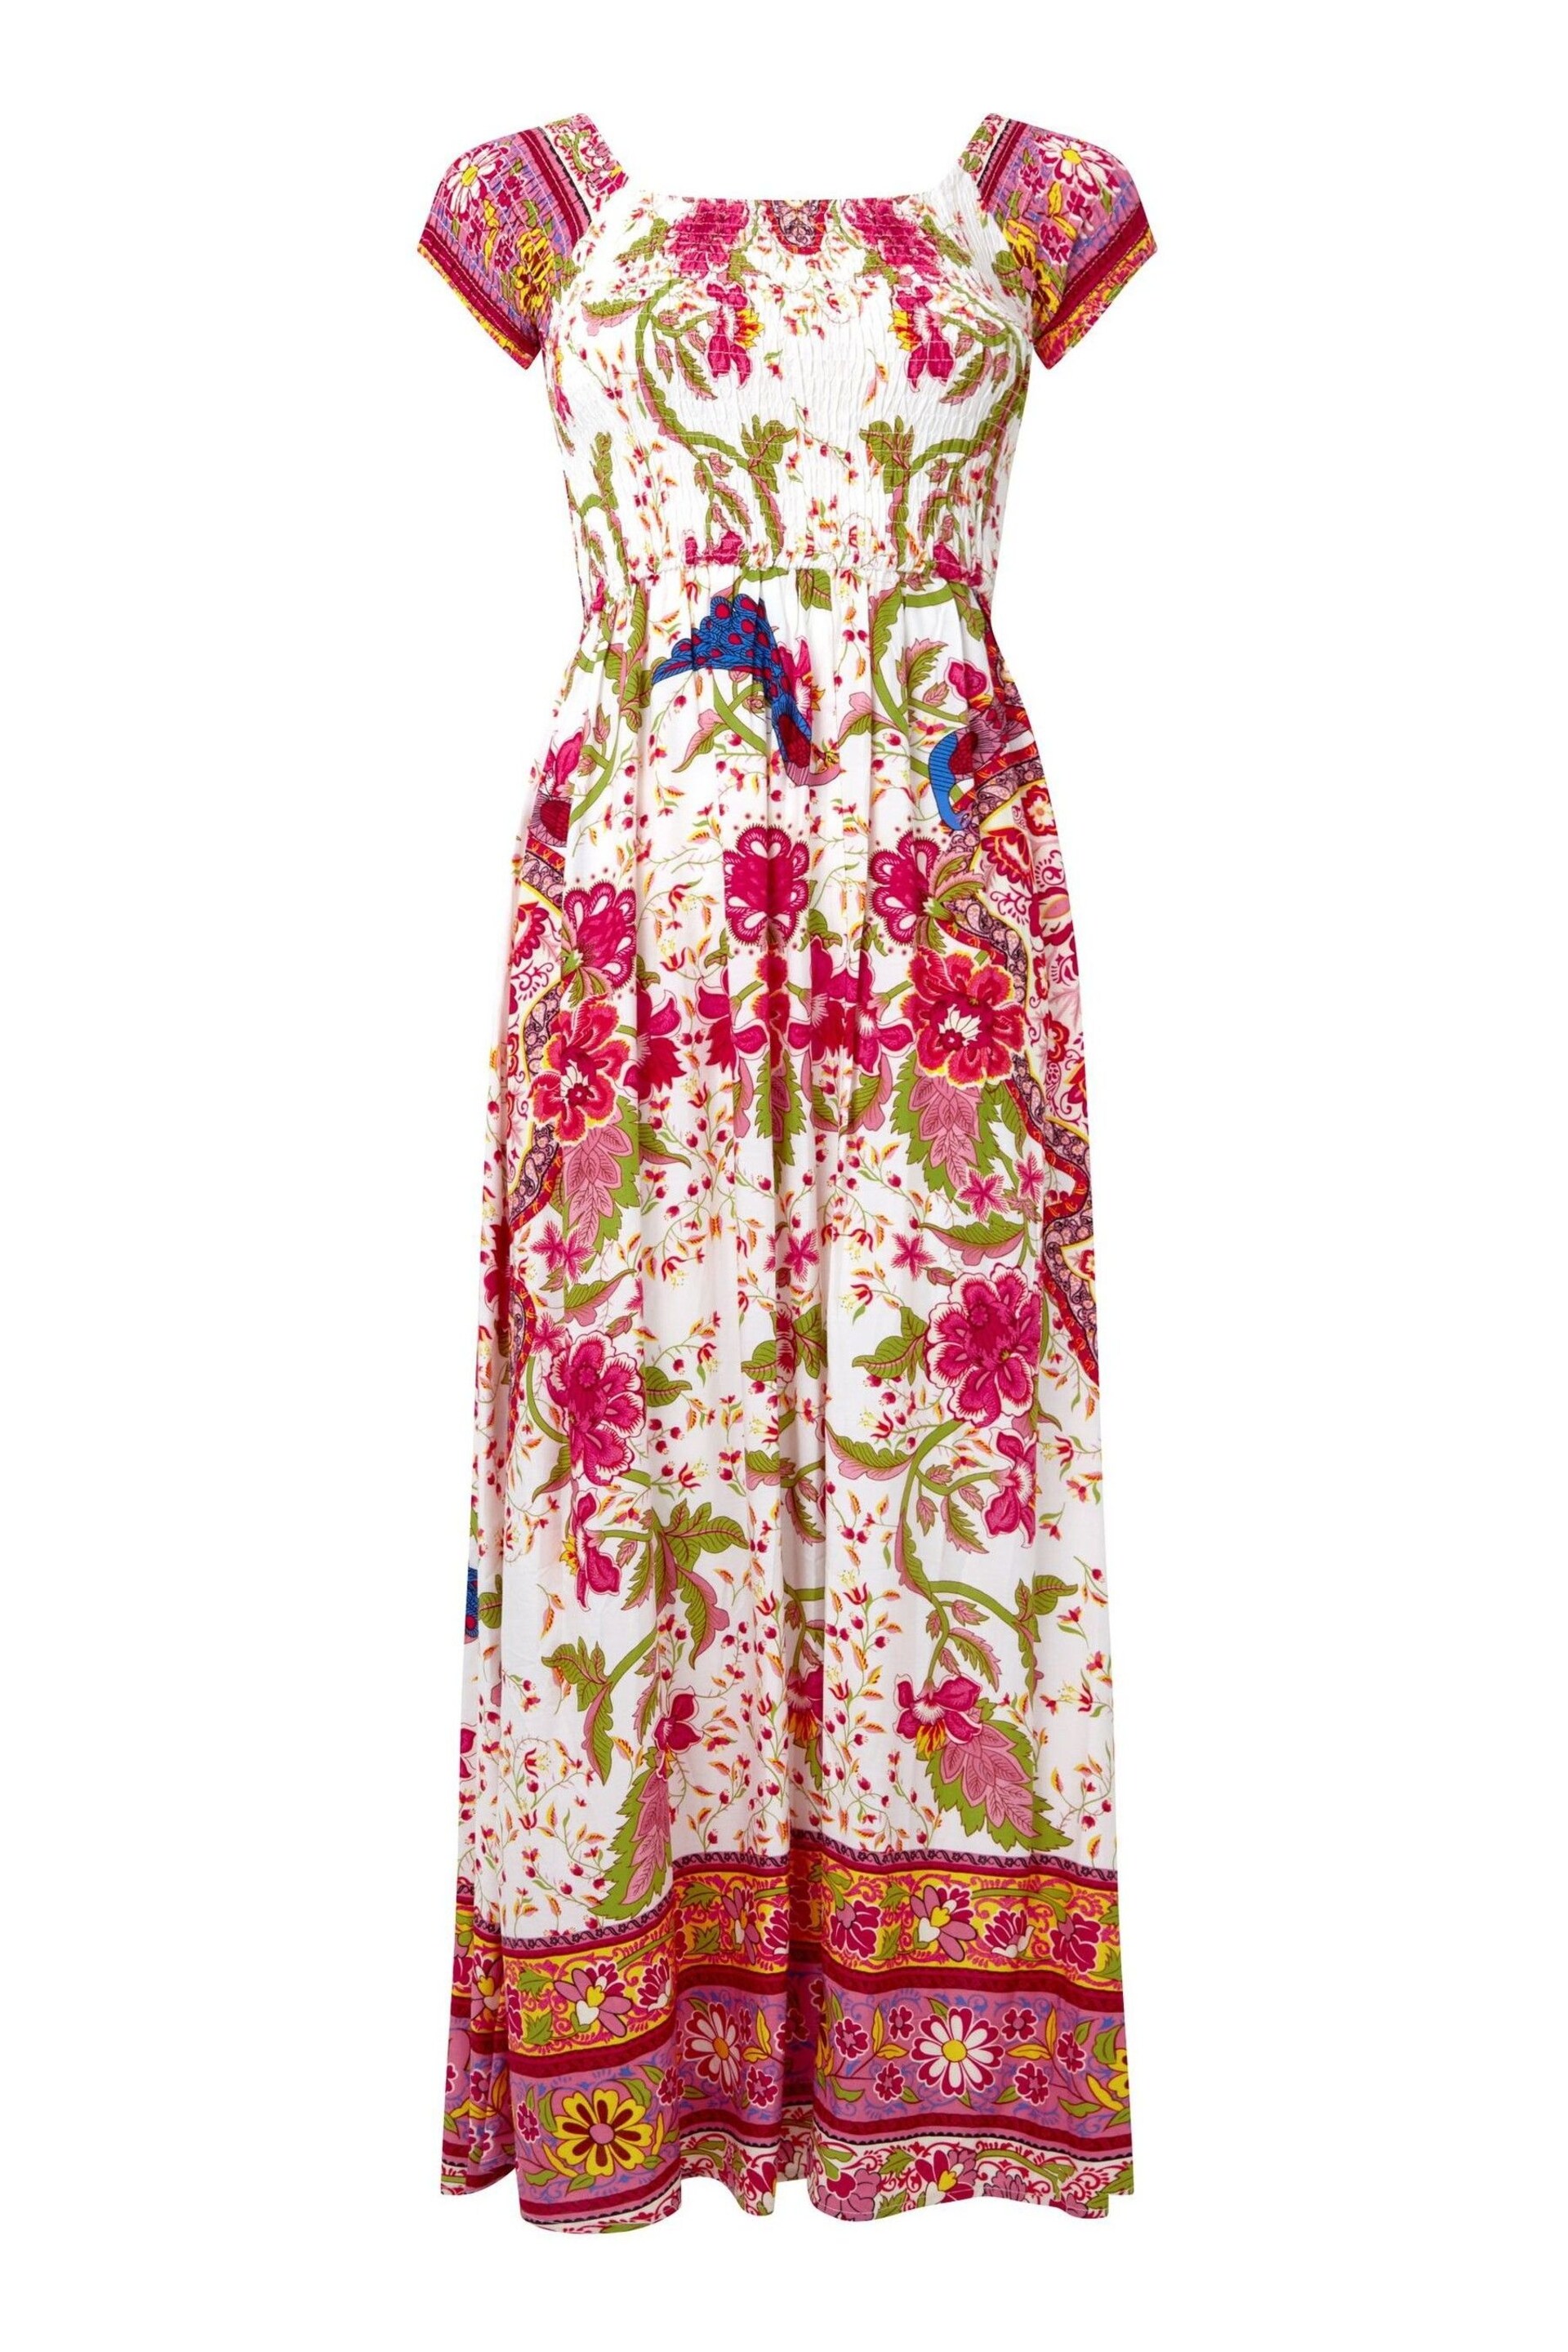 Joe Browns Pink Short Sleeve Border Print Maxi Dress - Image 7 of 7